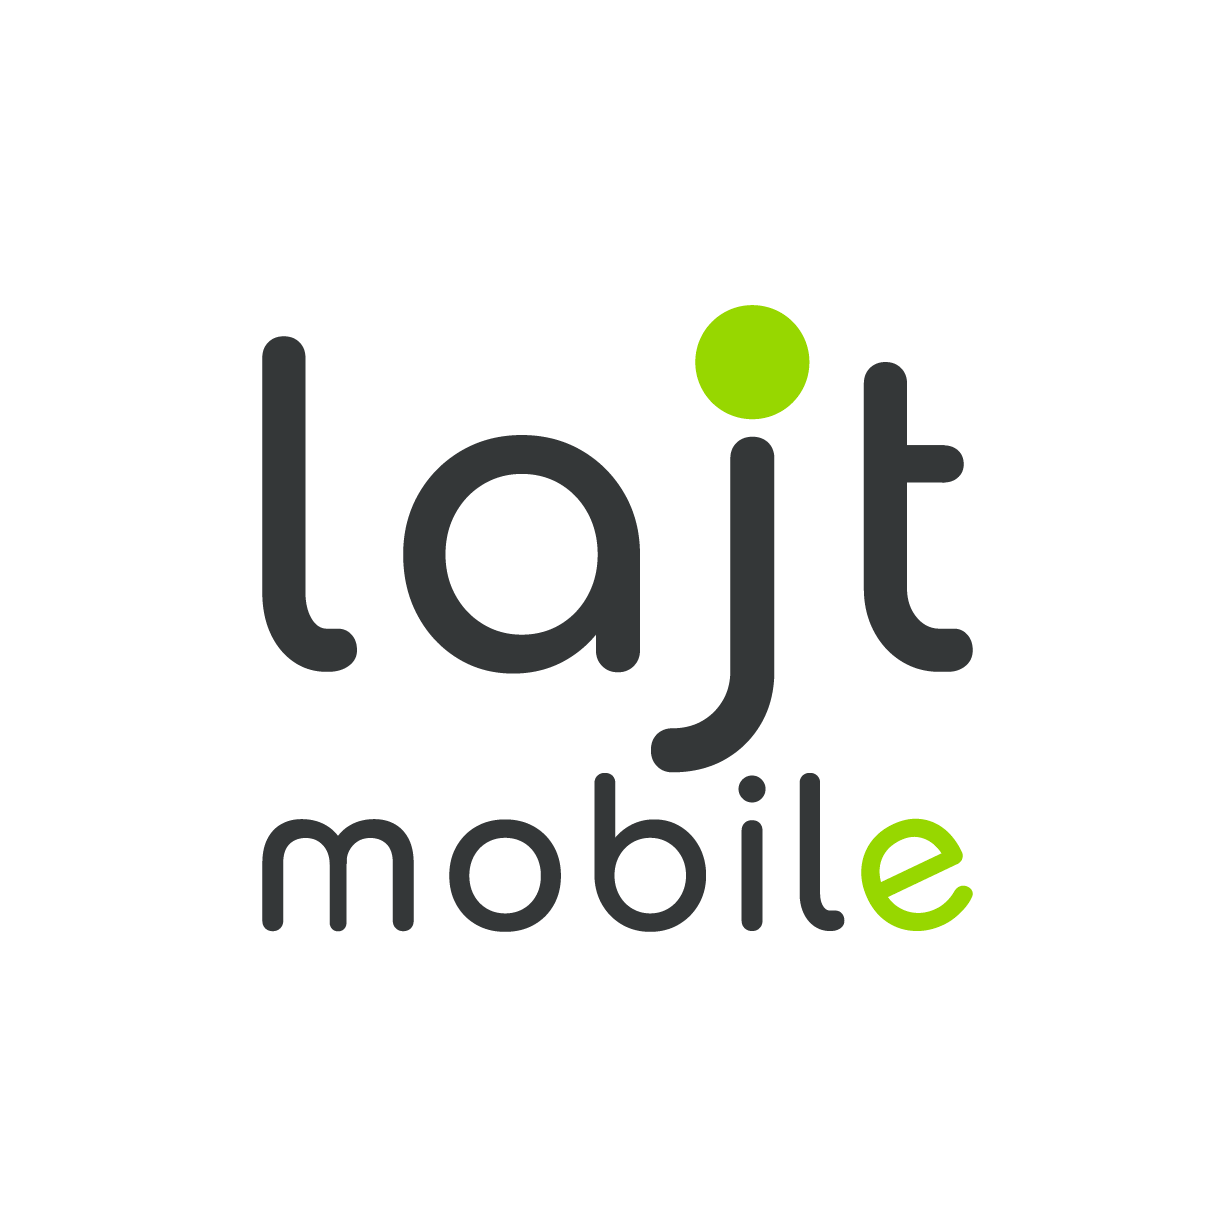 Logo lajt mobile, sieci mającej najtańszy abonament